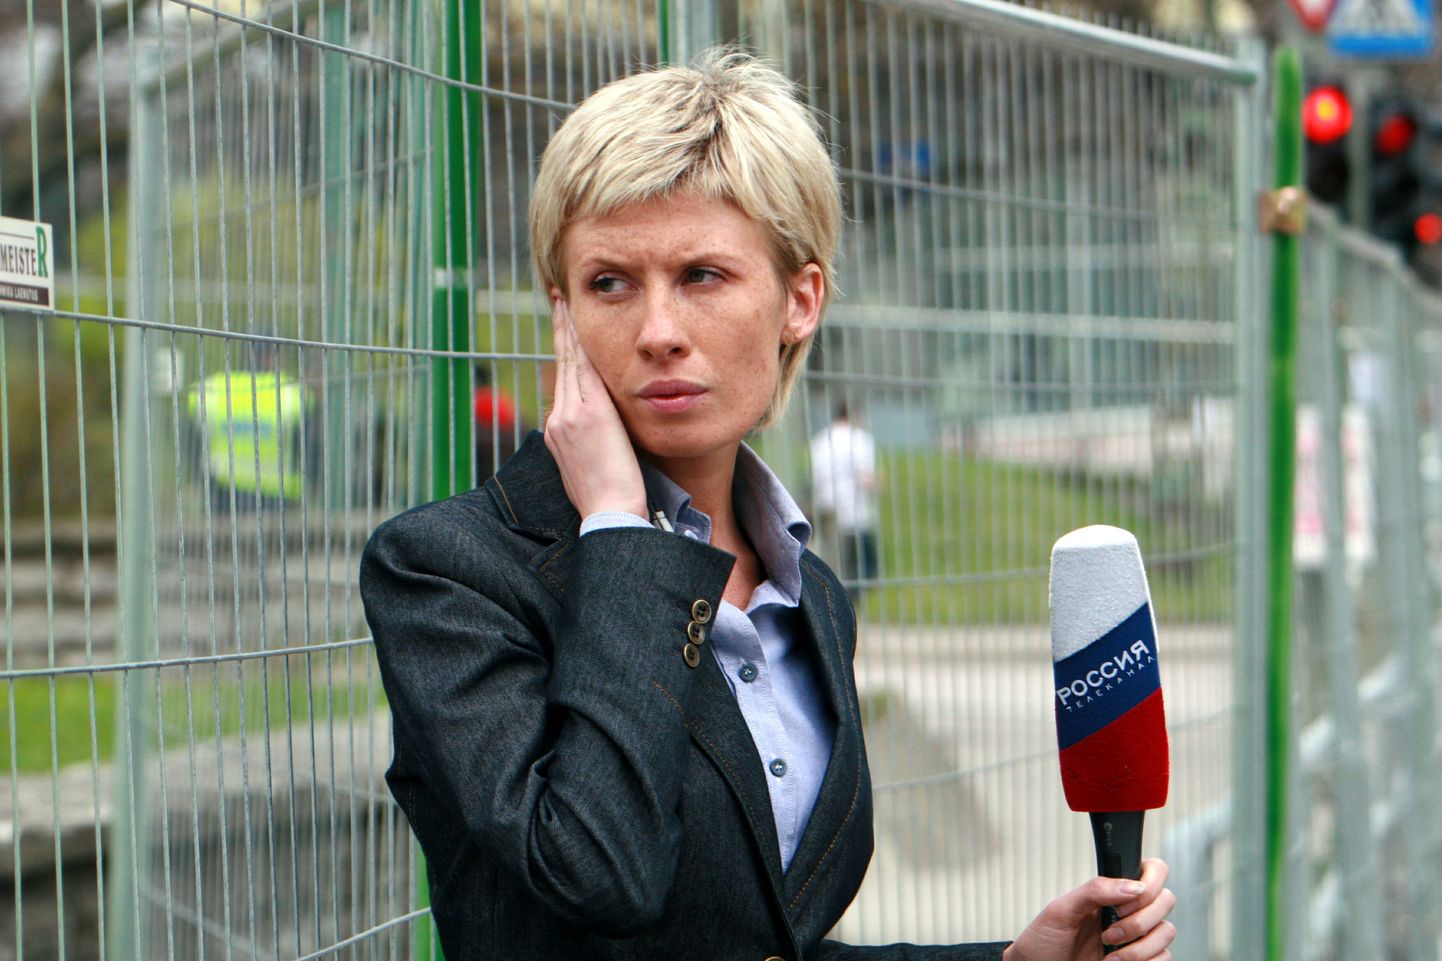 Vene telekanali Rossija ajakirjanik Tallinnas Tõnismäel aprillis 2007.